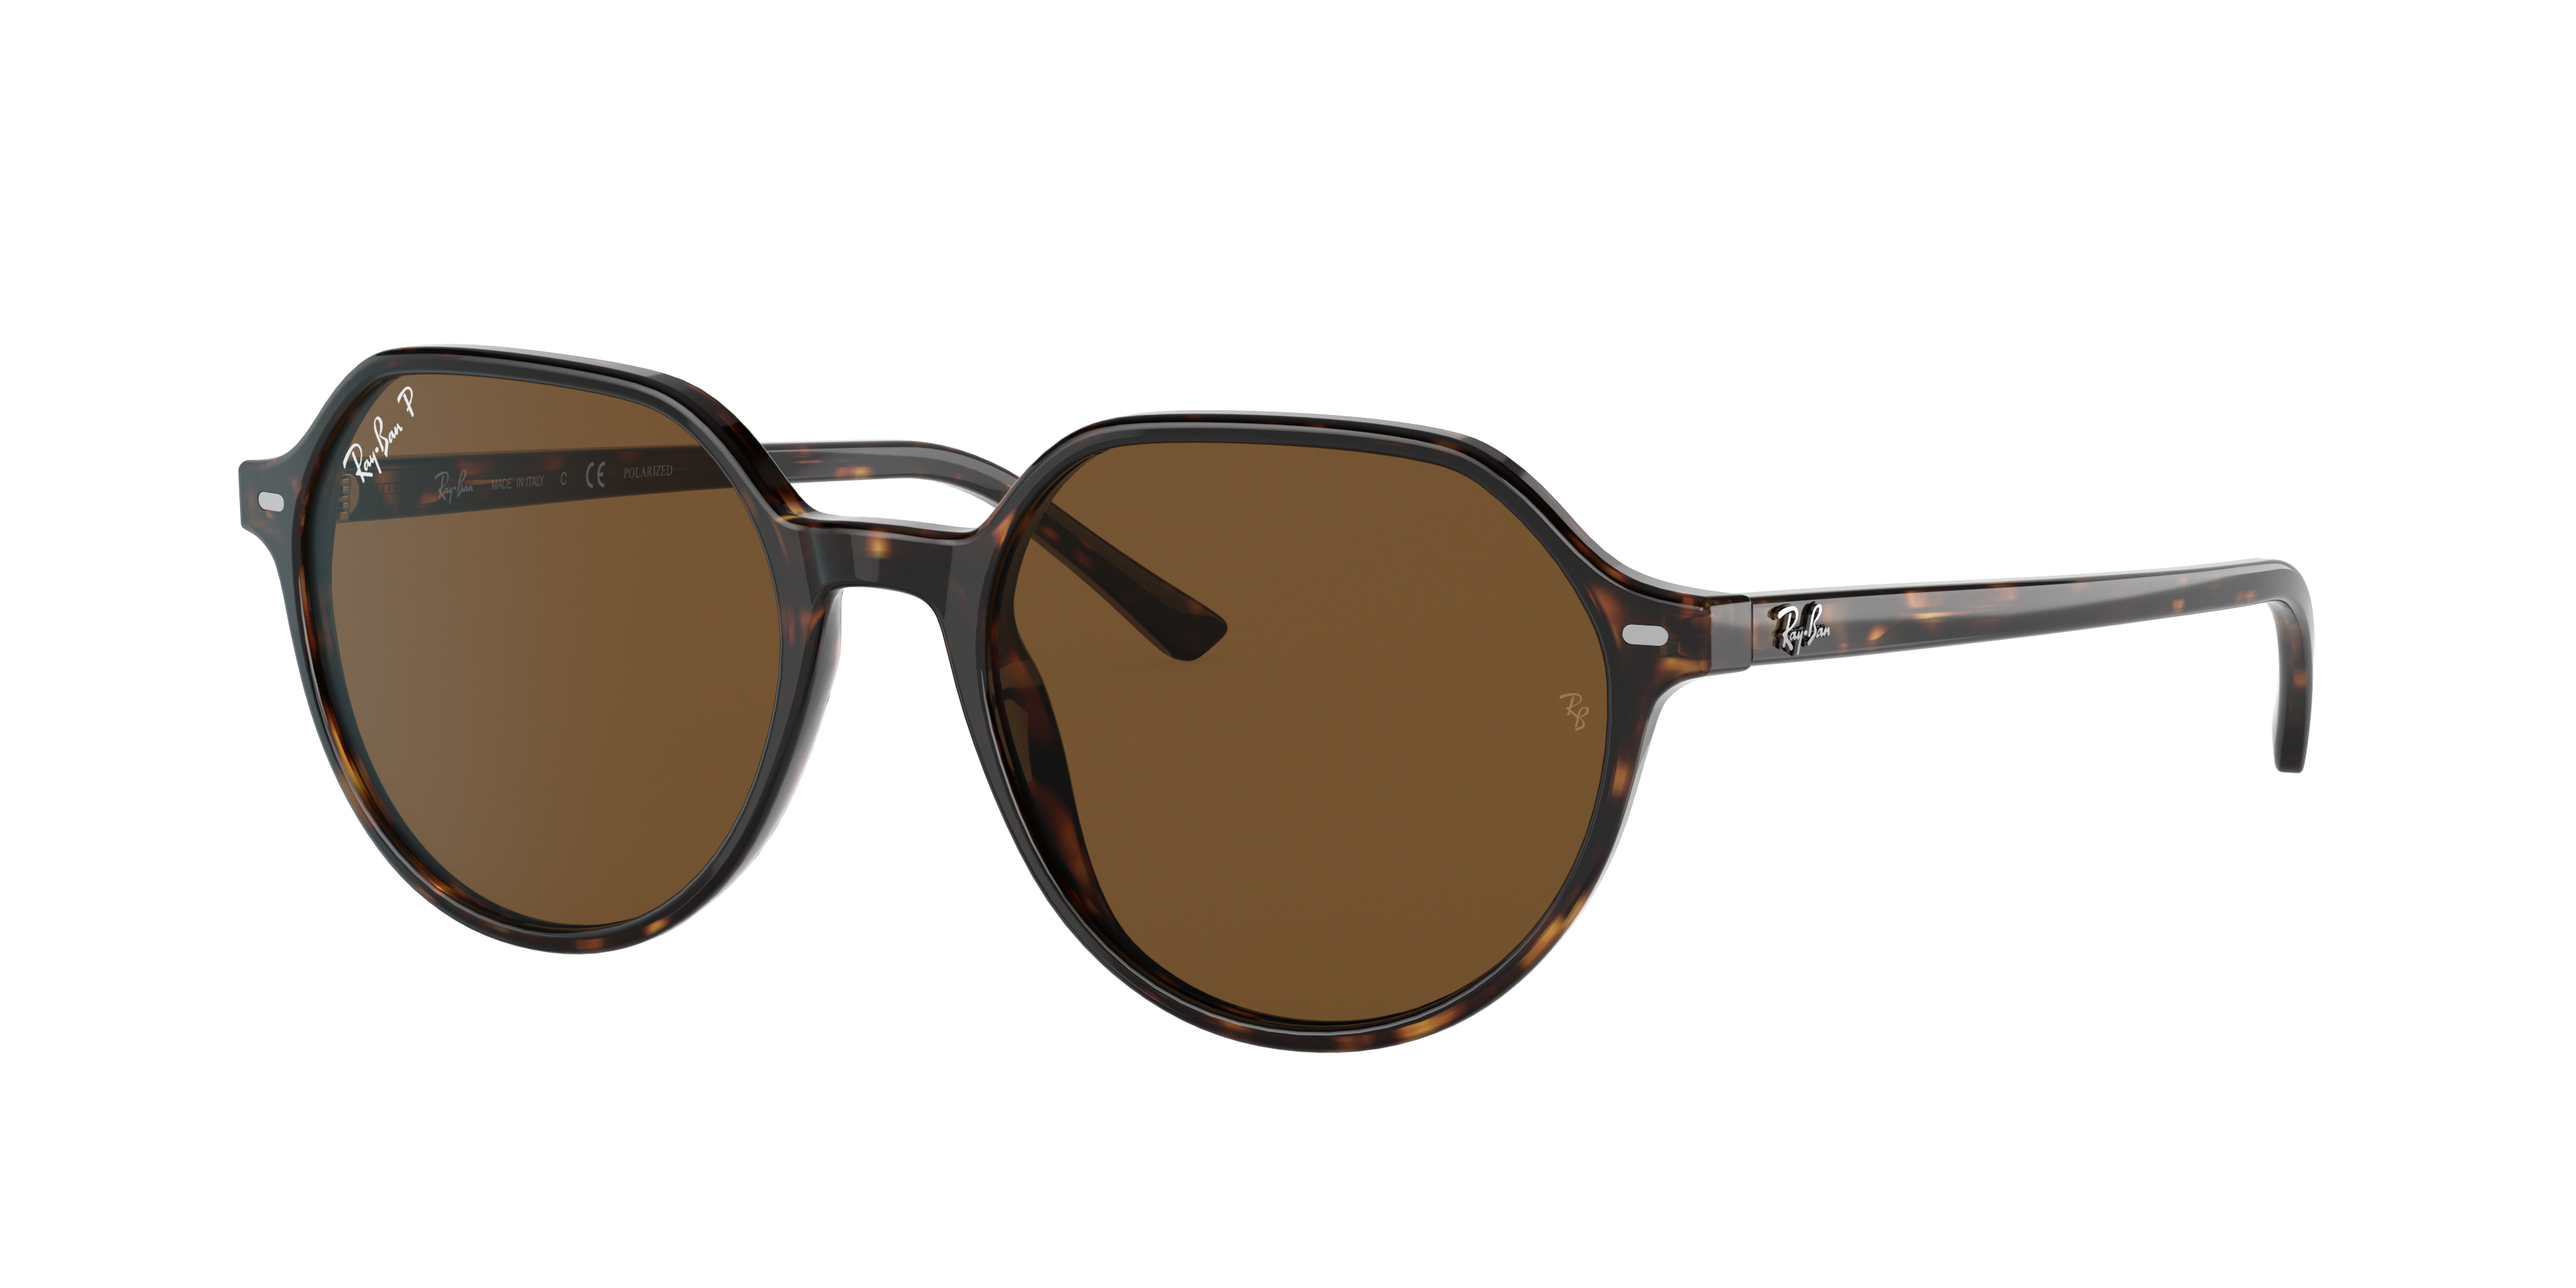 Ray Ban Thalia Sunglasses Tortoise Frame Brown Lenses Polarized 53-18